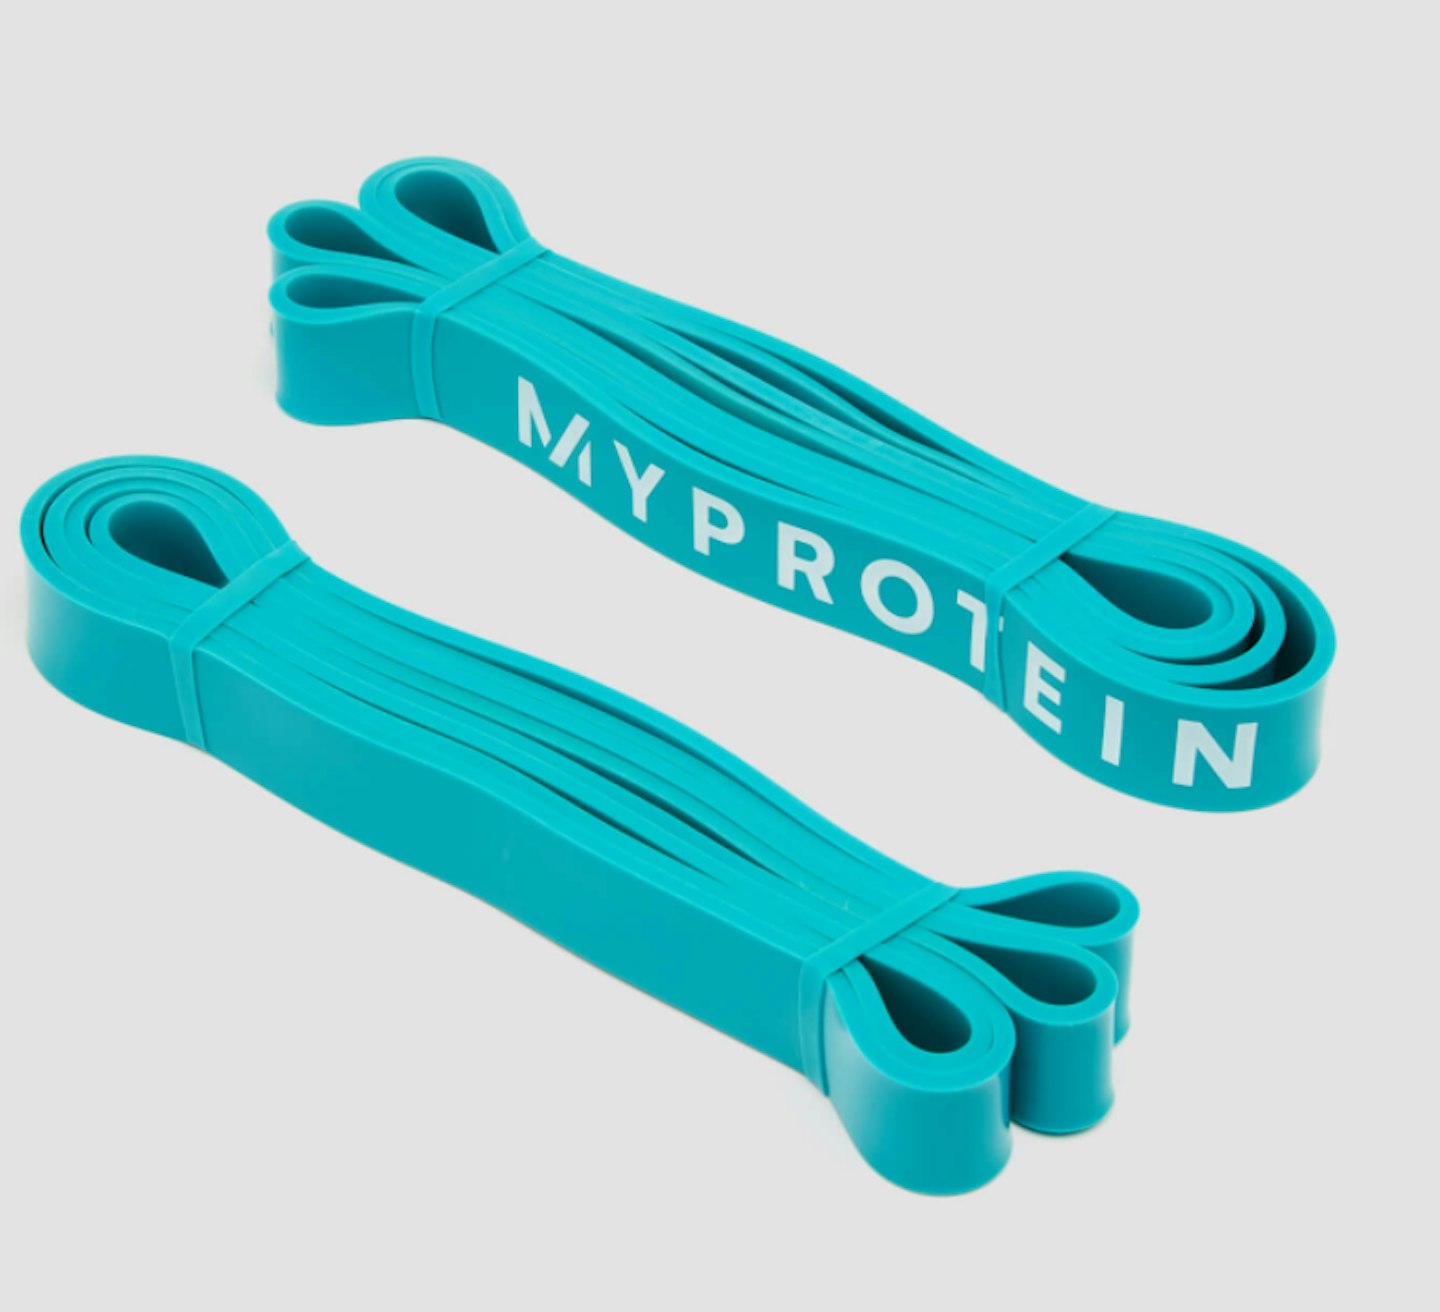 Myprotein Resistance Bands